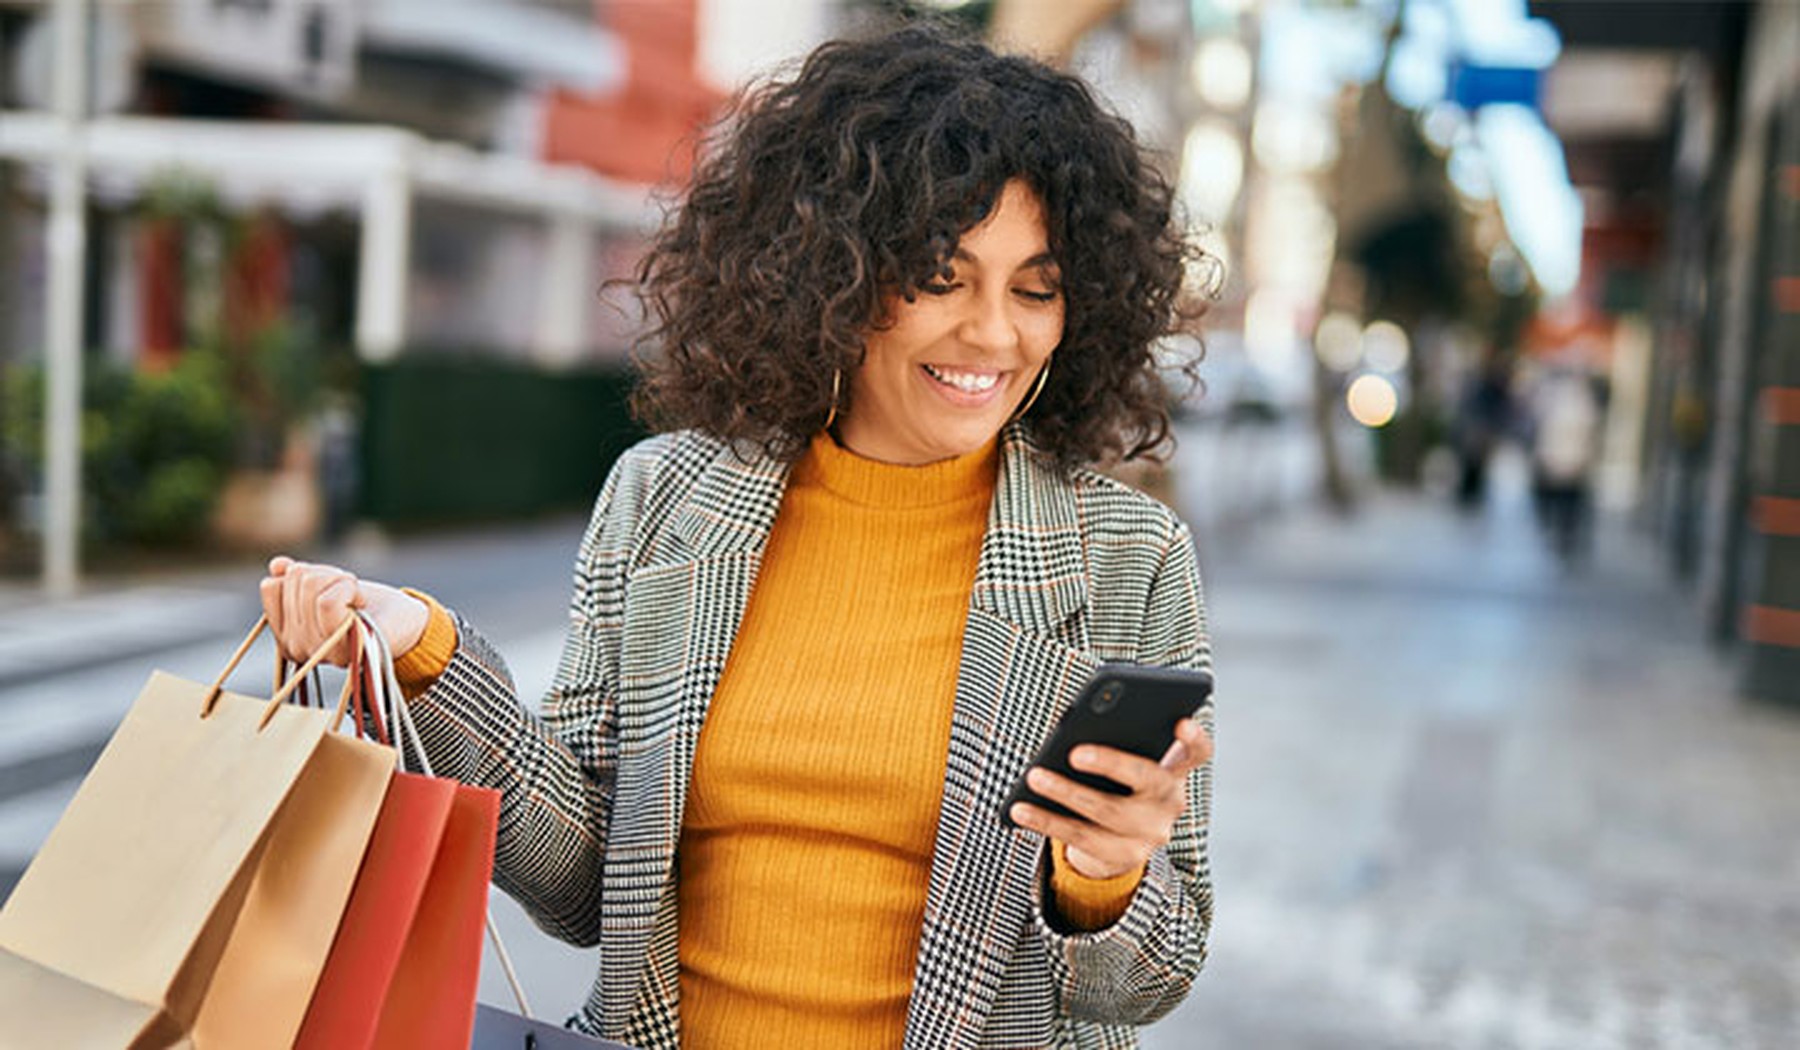 Vrouw is aan het shoppen en kijkt op smartphone